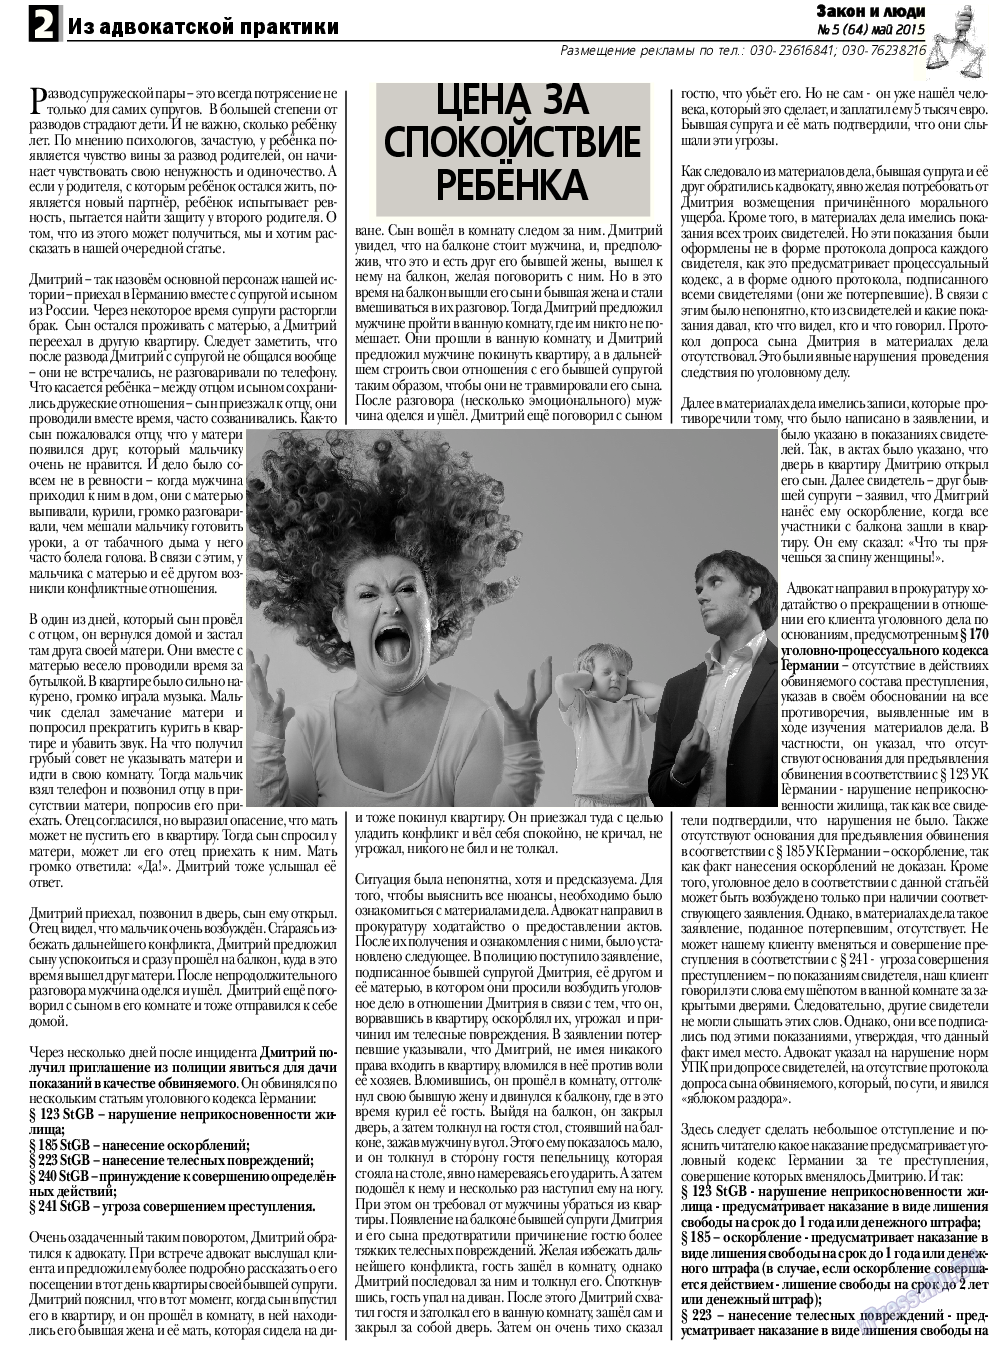 Закон и люди, газета. 2015 №5 стр.2